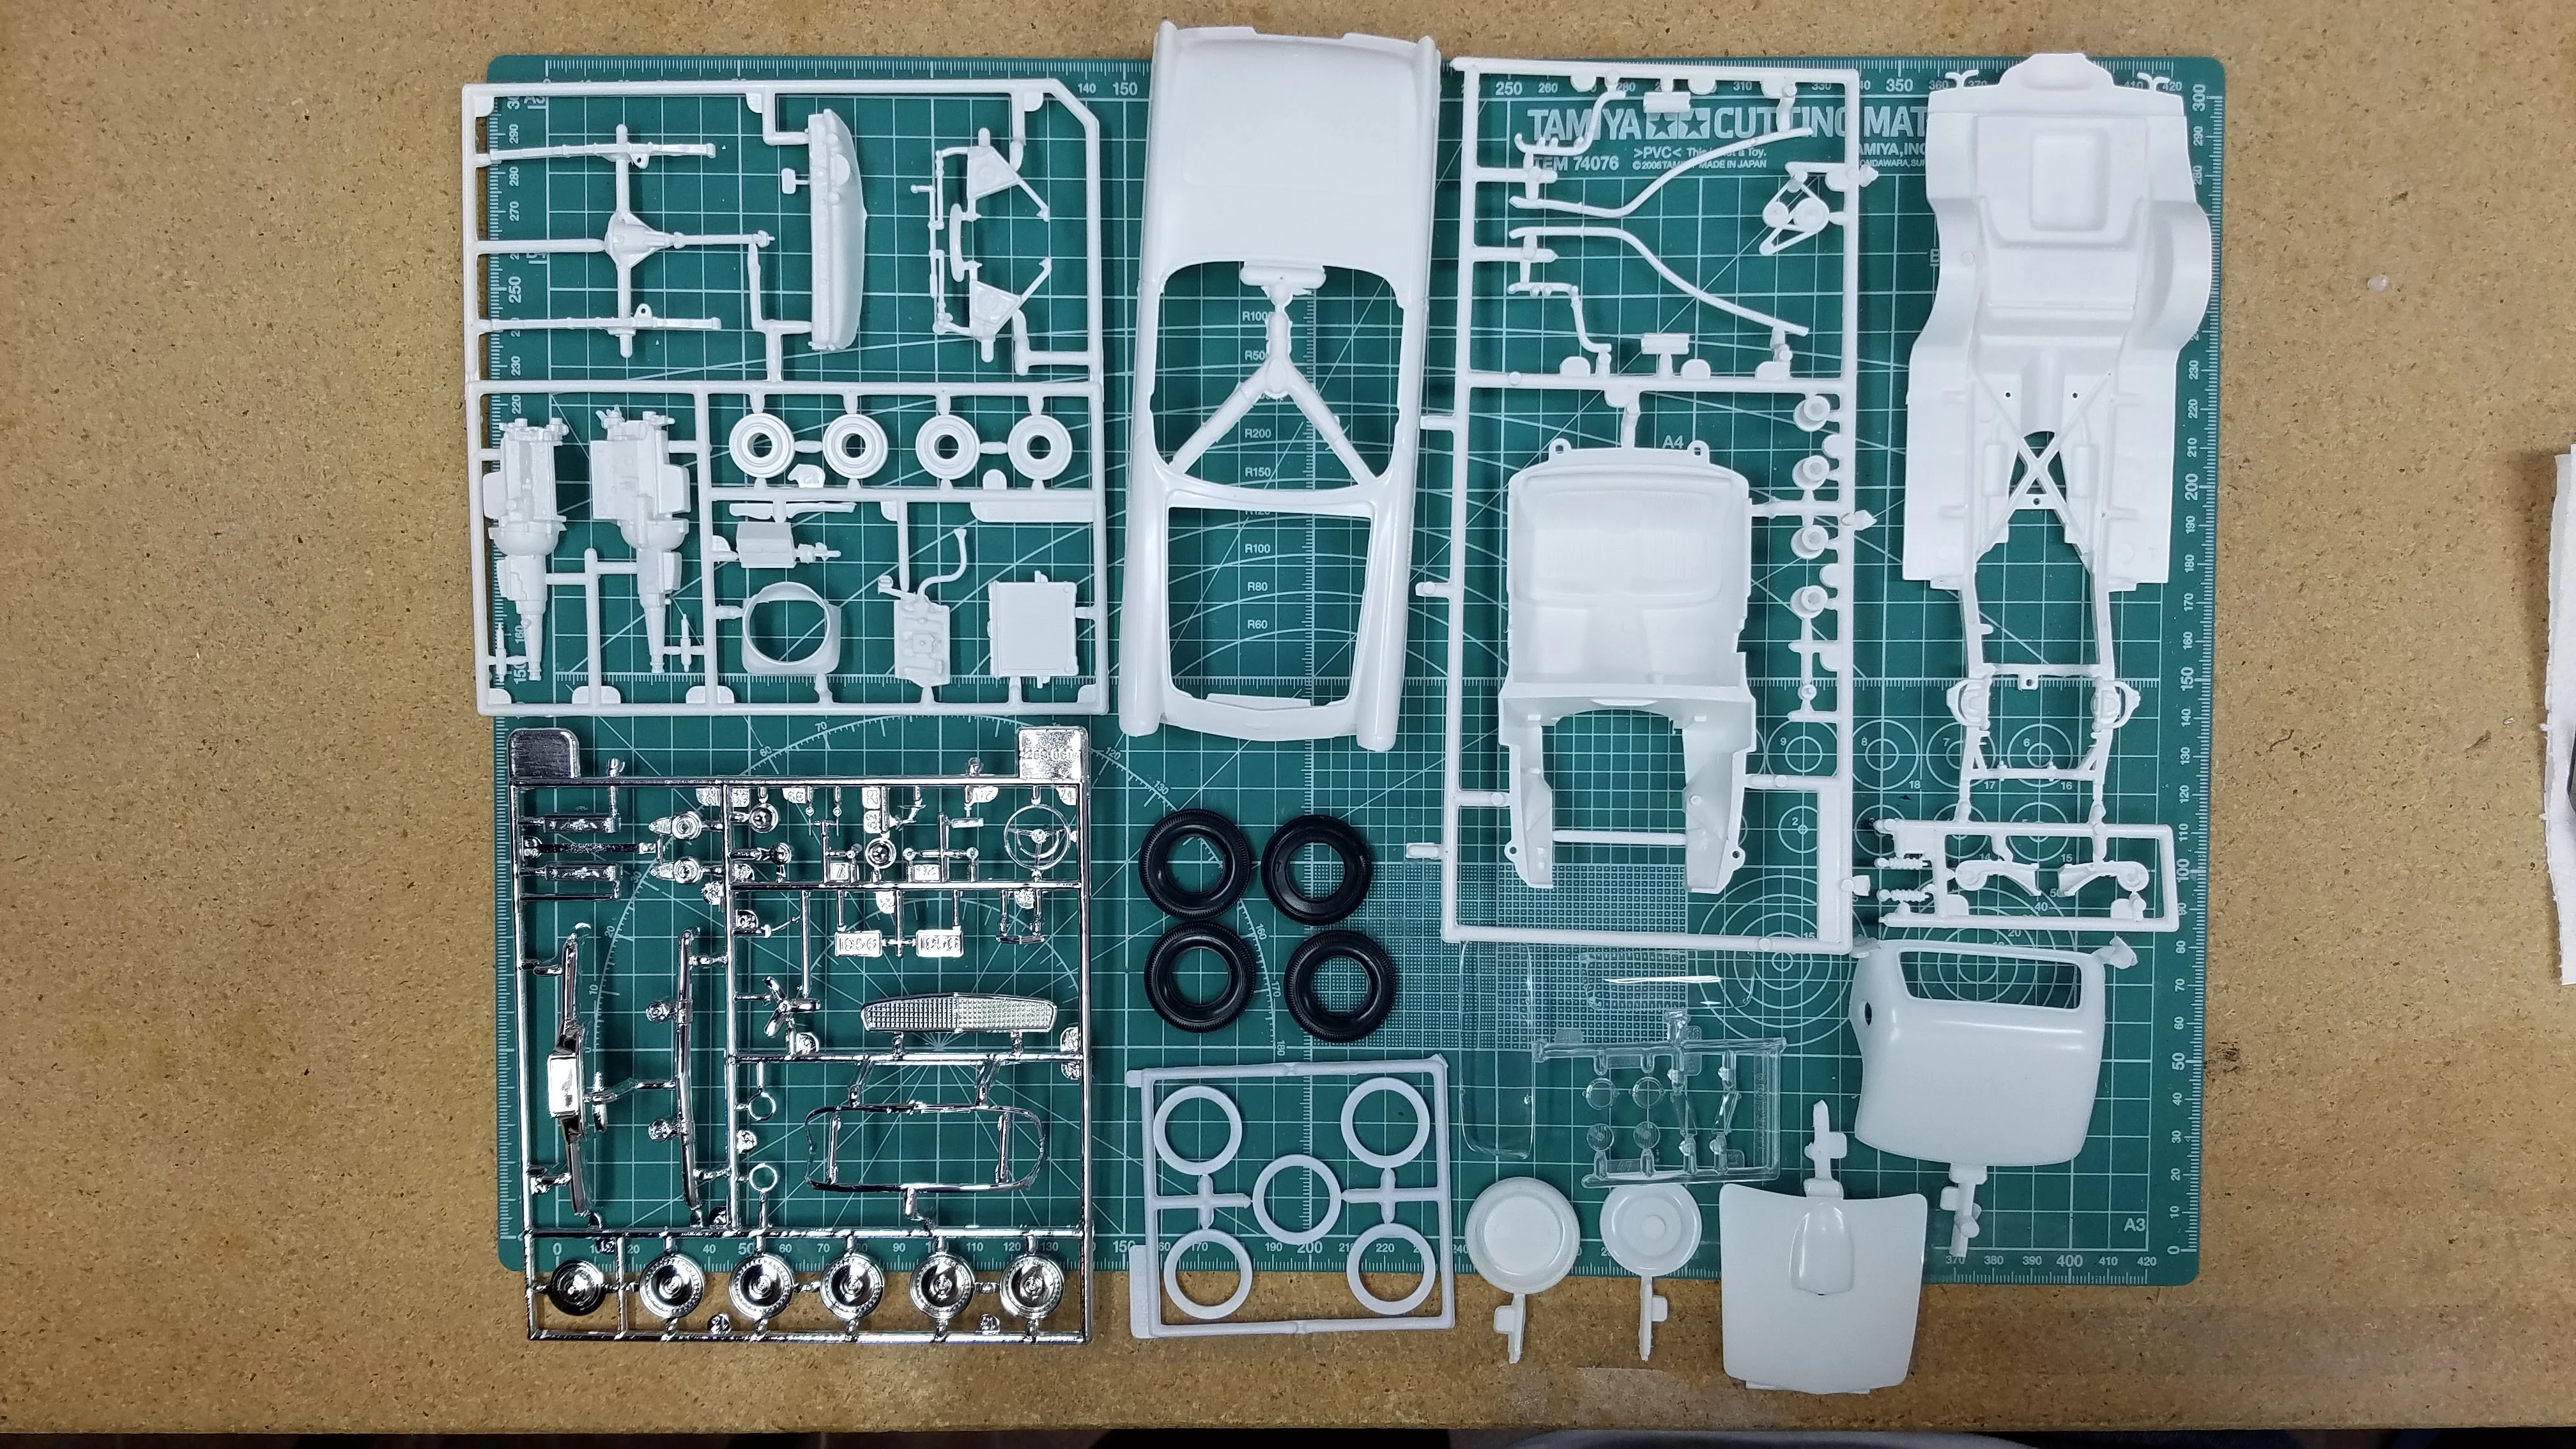 Kit parts laid out